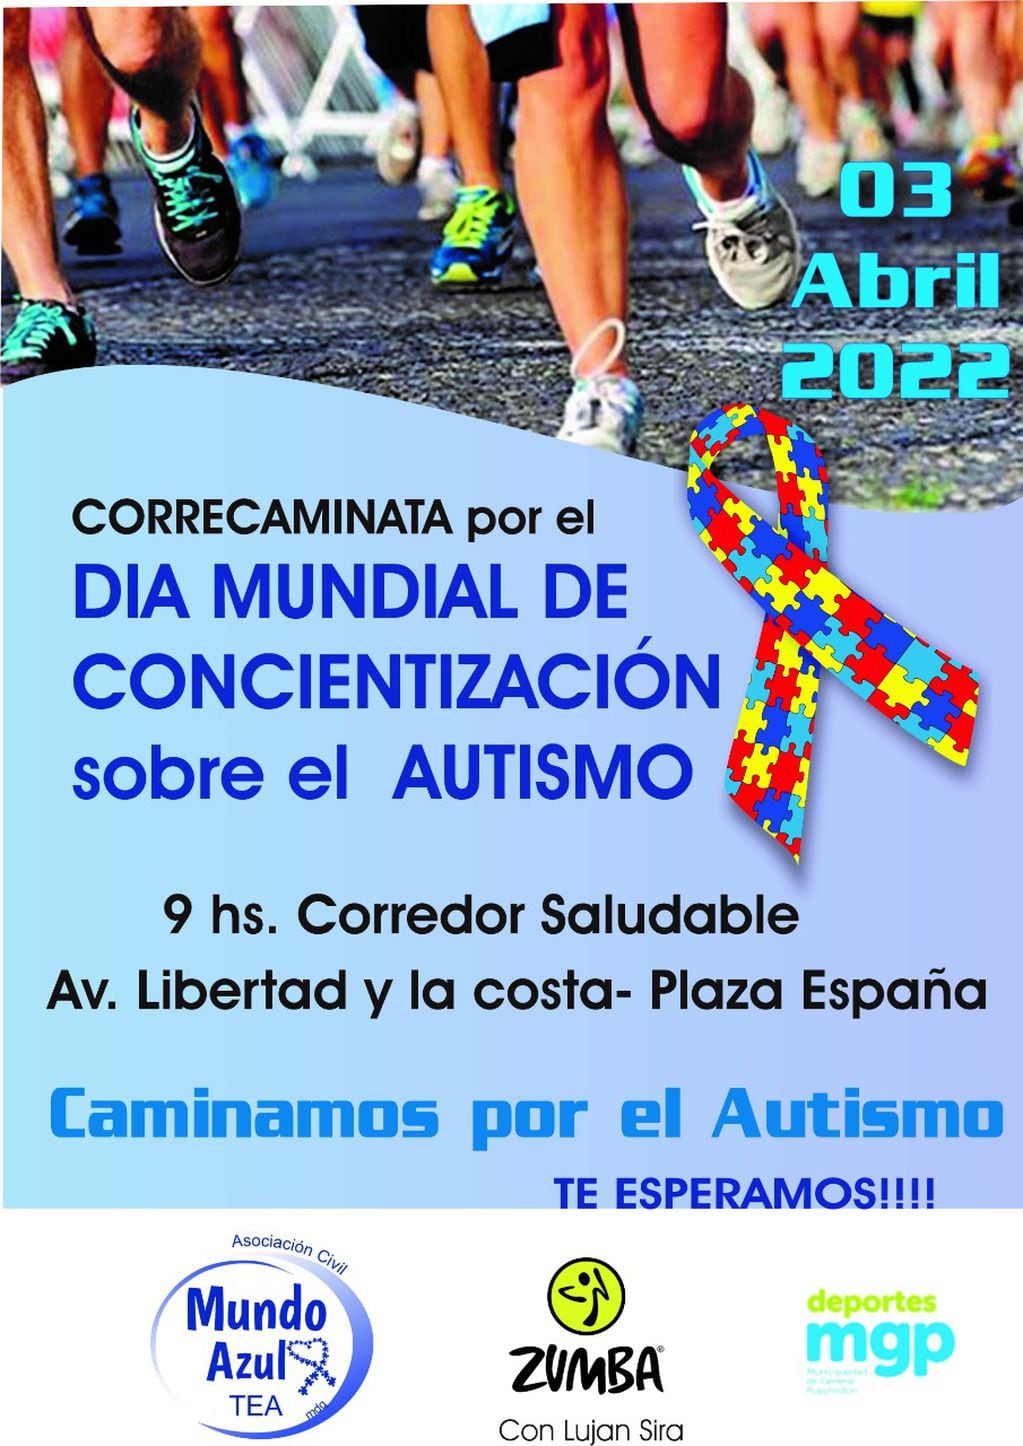 la Asociación “Mundo Azul Tea Mar del Plata” realizará una correcaminata en el corredor saludable en conmemoración del Día Mundial de la Concienciación sobre el Autismo